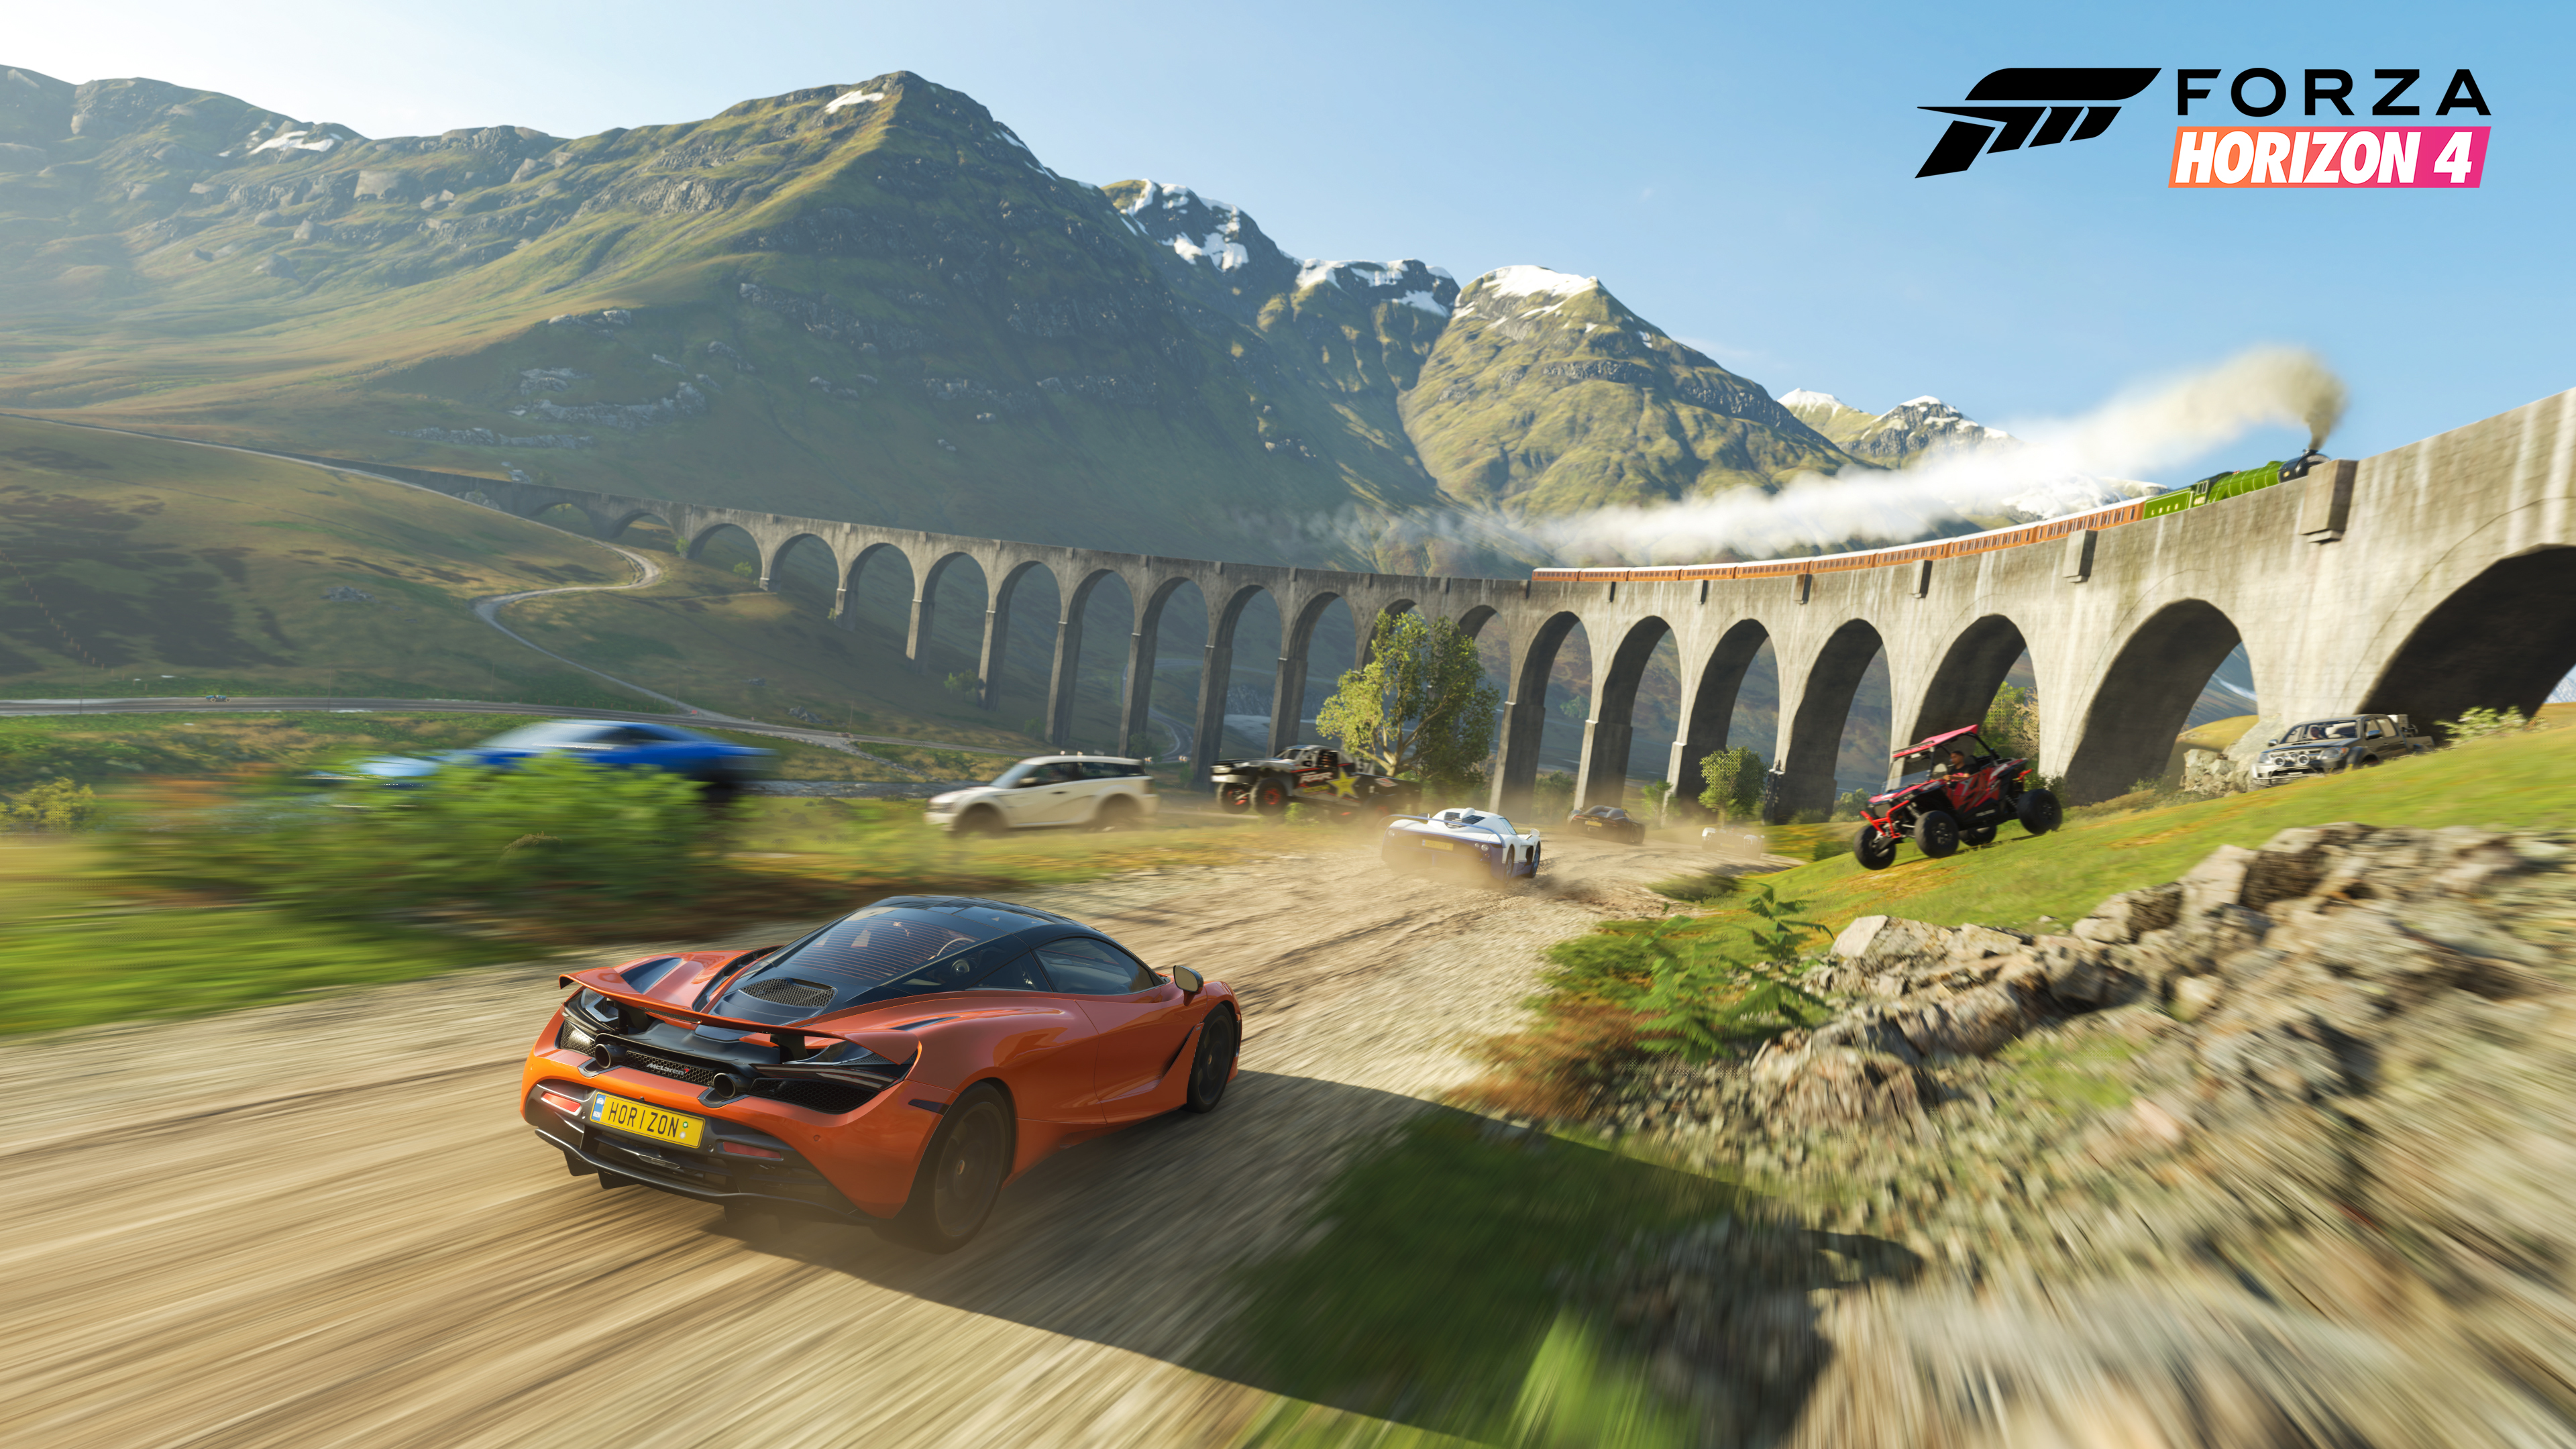 Forza Horizon 4 поставила очередной личный рекорд по числу одновременных игроков в Steam